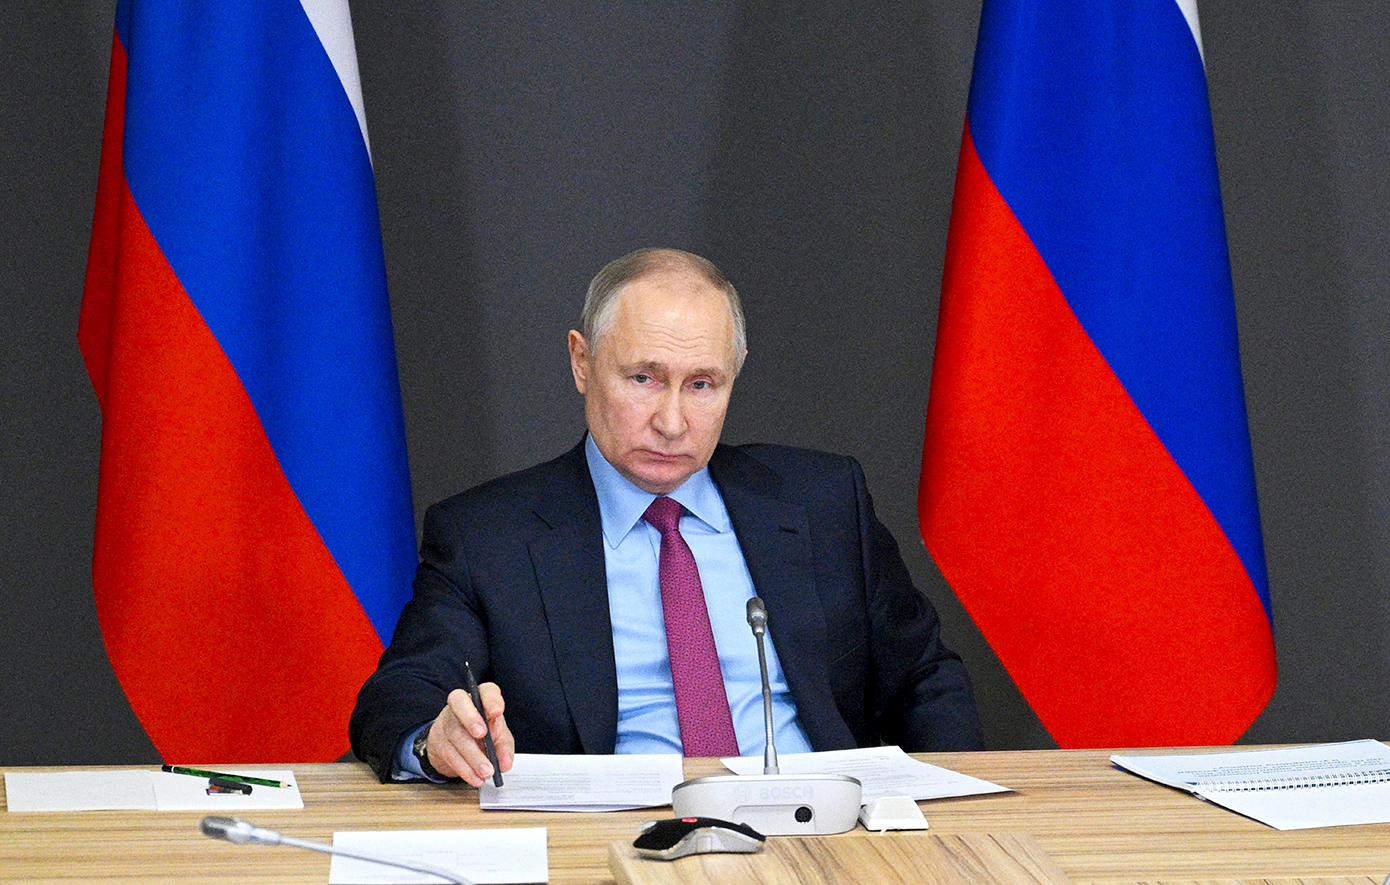 Κάλεσμα Πούτιν ενόψει των εκλογών: «Ψηφίστε ενωμένοι για μια ισχυρή, ελεύθερη Ρωσία που ευημερεί»